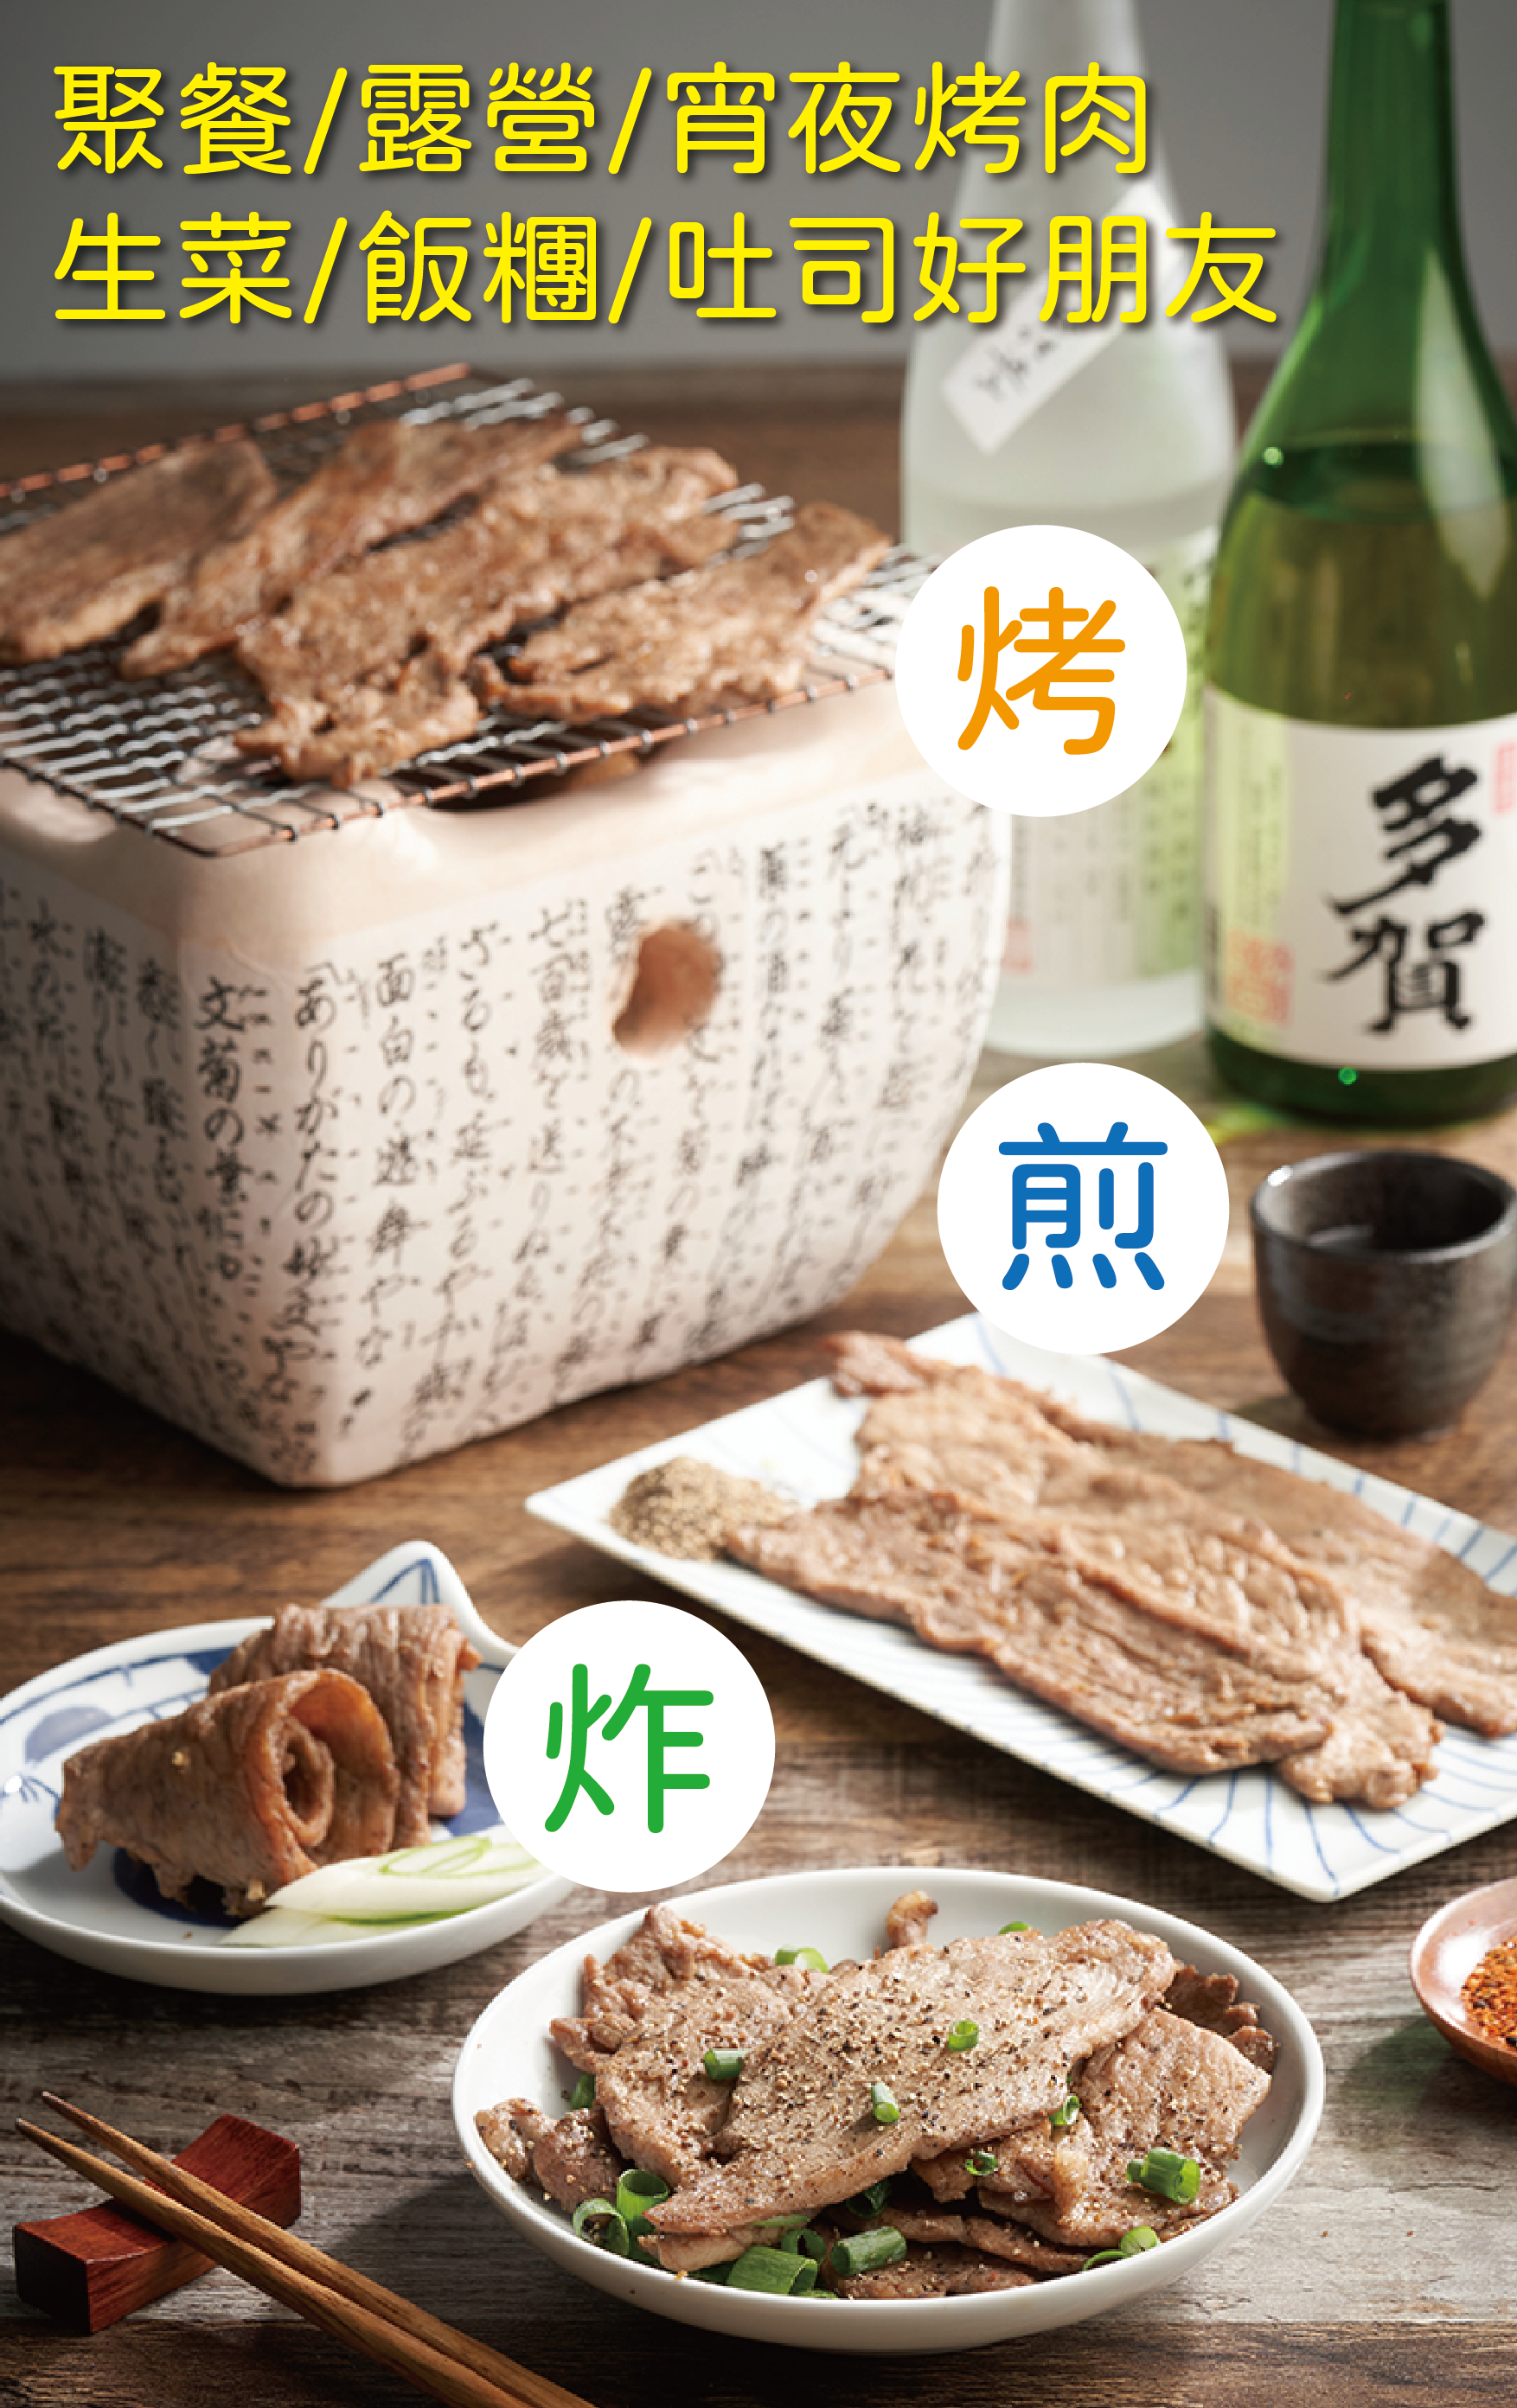 【蒸荐康】Q嫩彈牙大包醃製日式燒肉 600公克/包